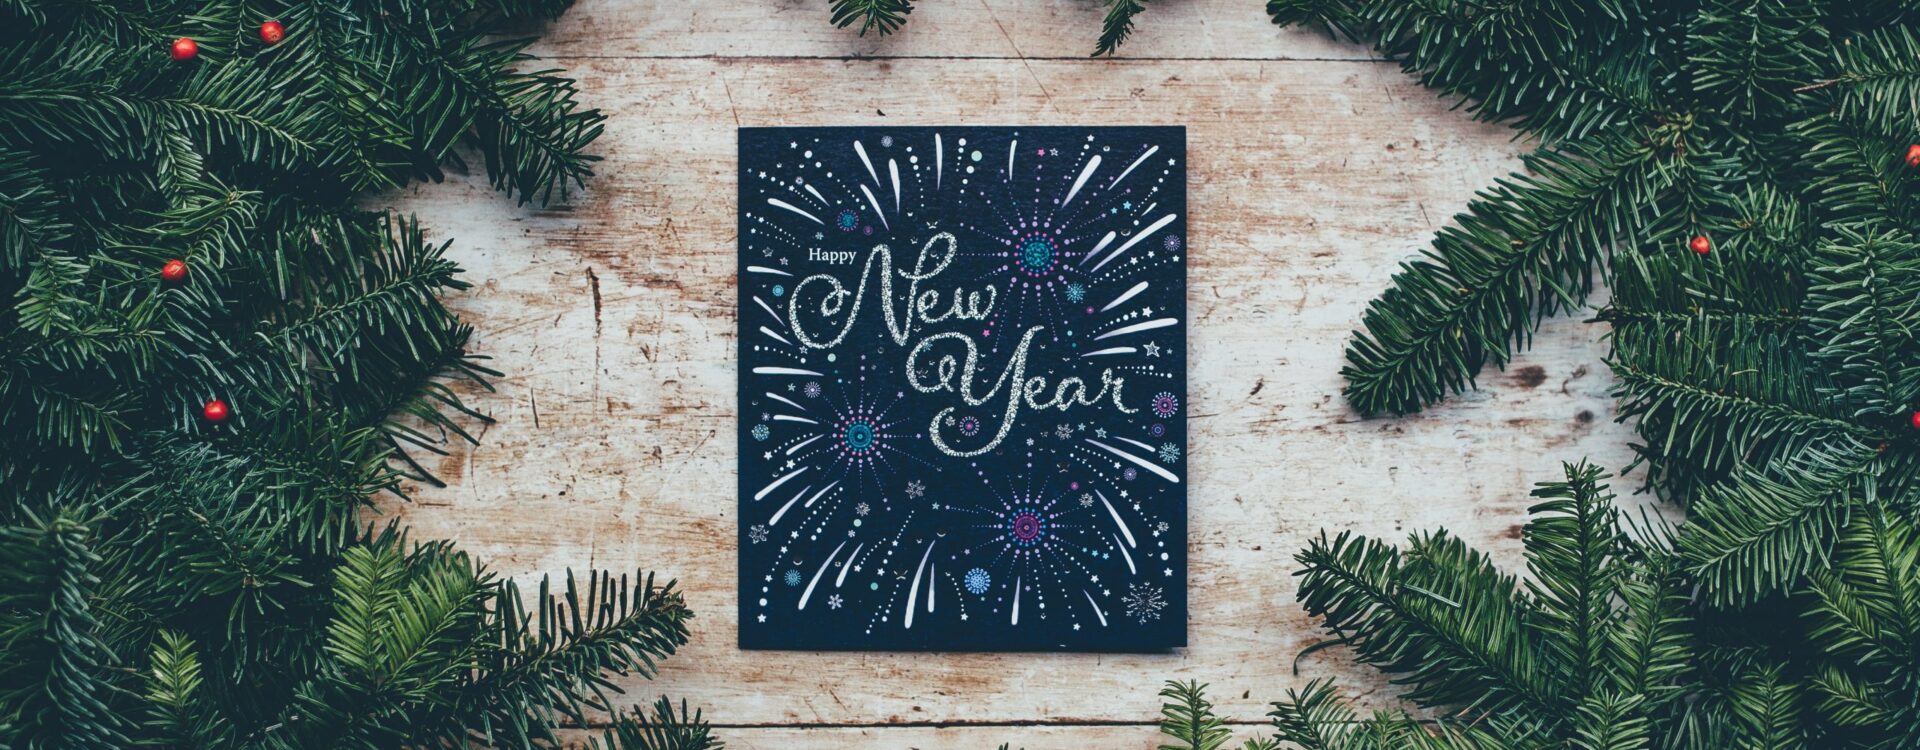 blc-Allstars: Unsere Wünsche fürs neue Jahr